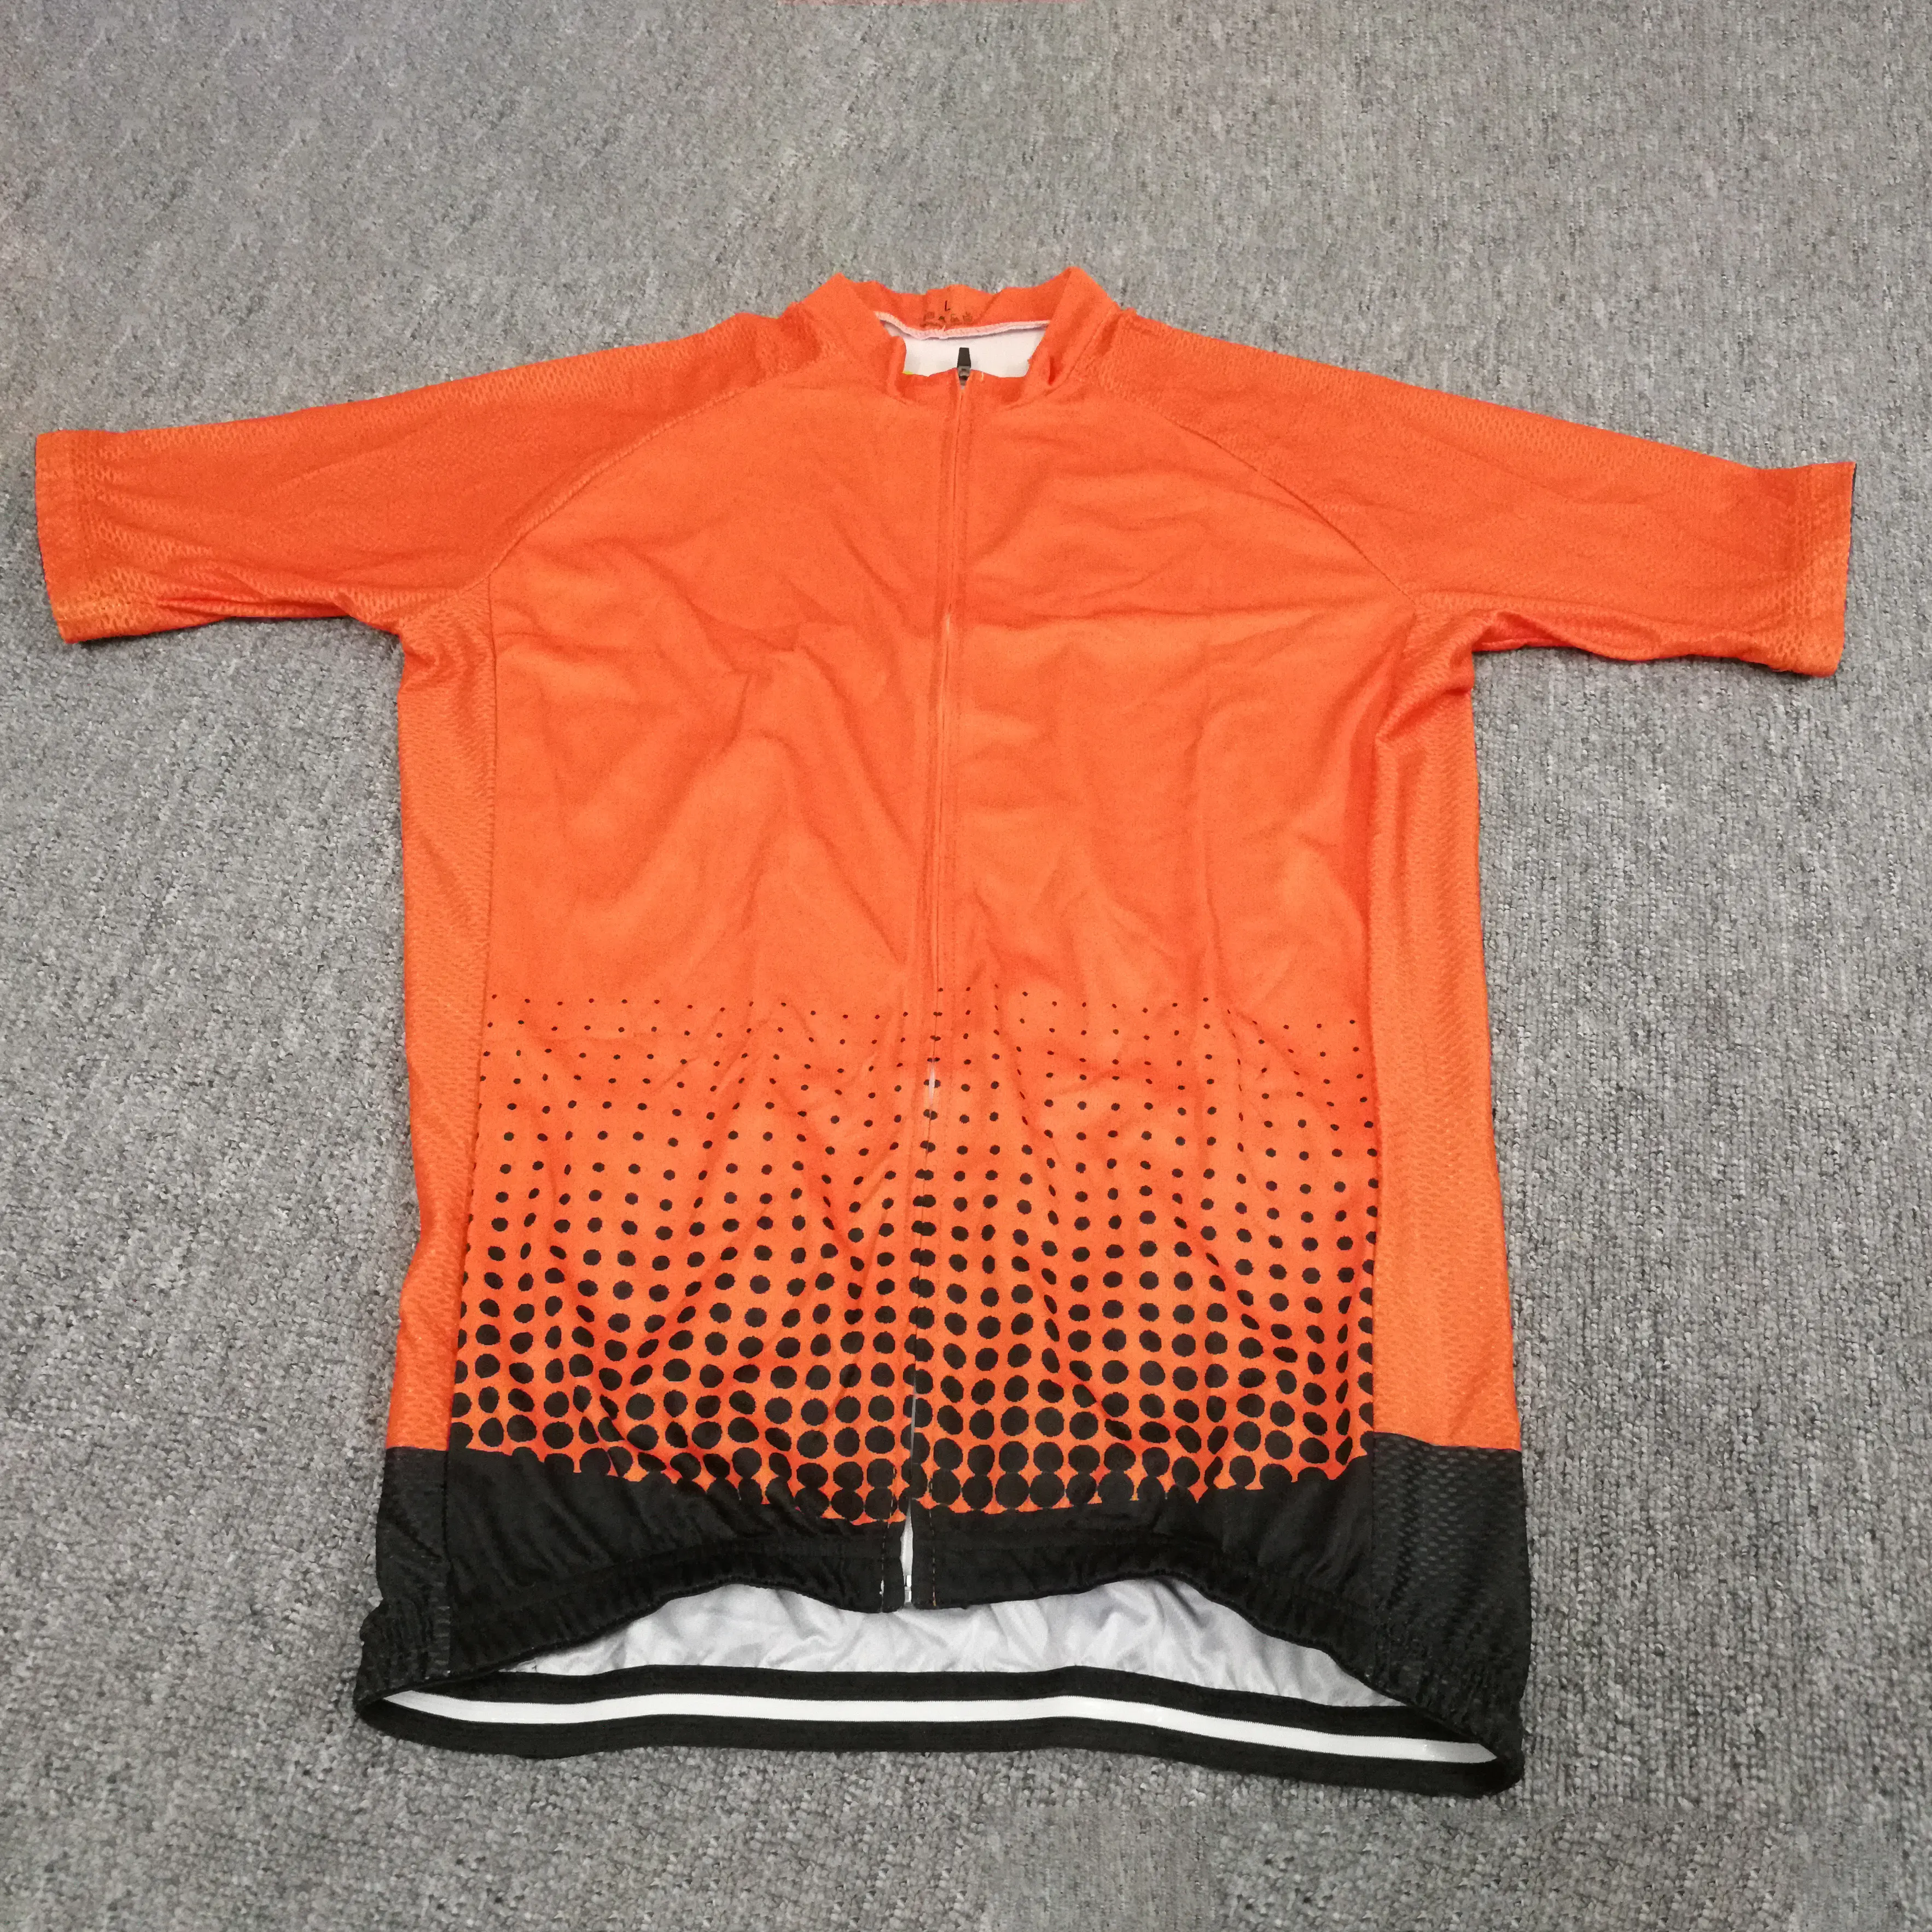 Orange maillot de Cyclisme Vélo ensemble court manches jambe fin avec bande de silicone cyclisme uniformes